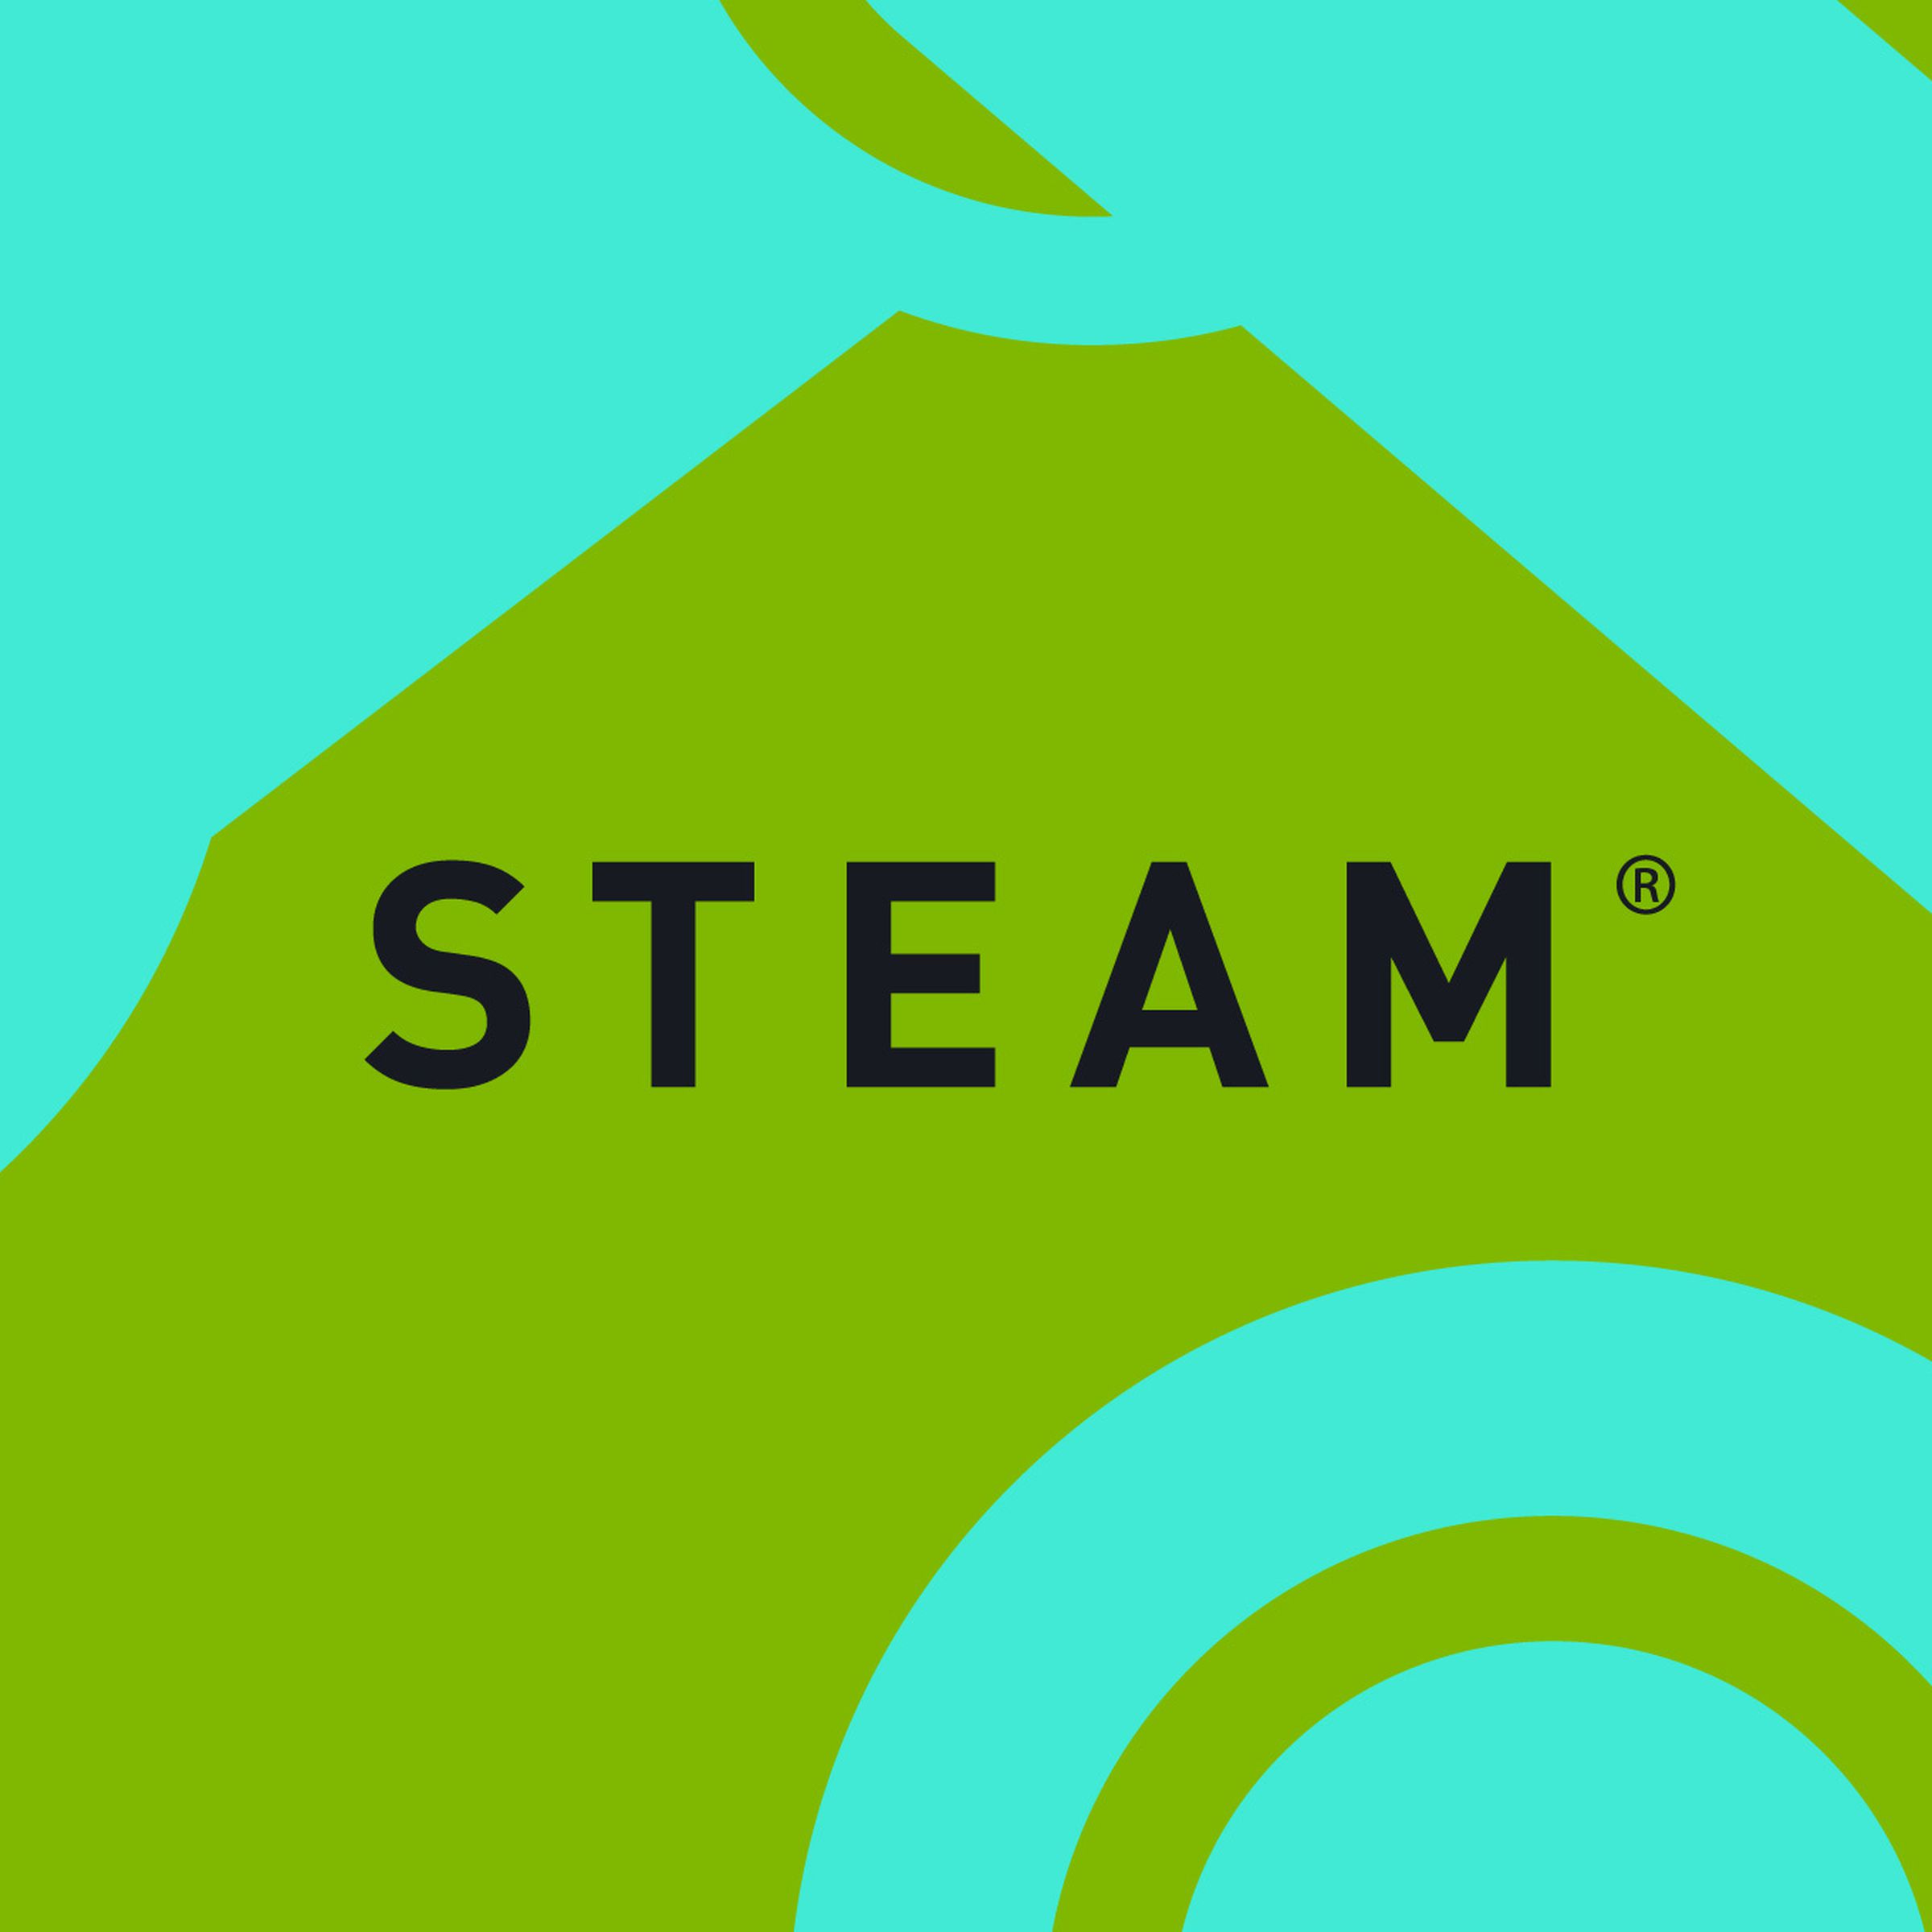 The Steam logo